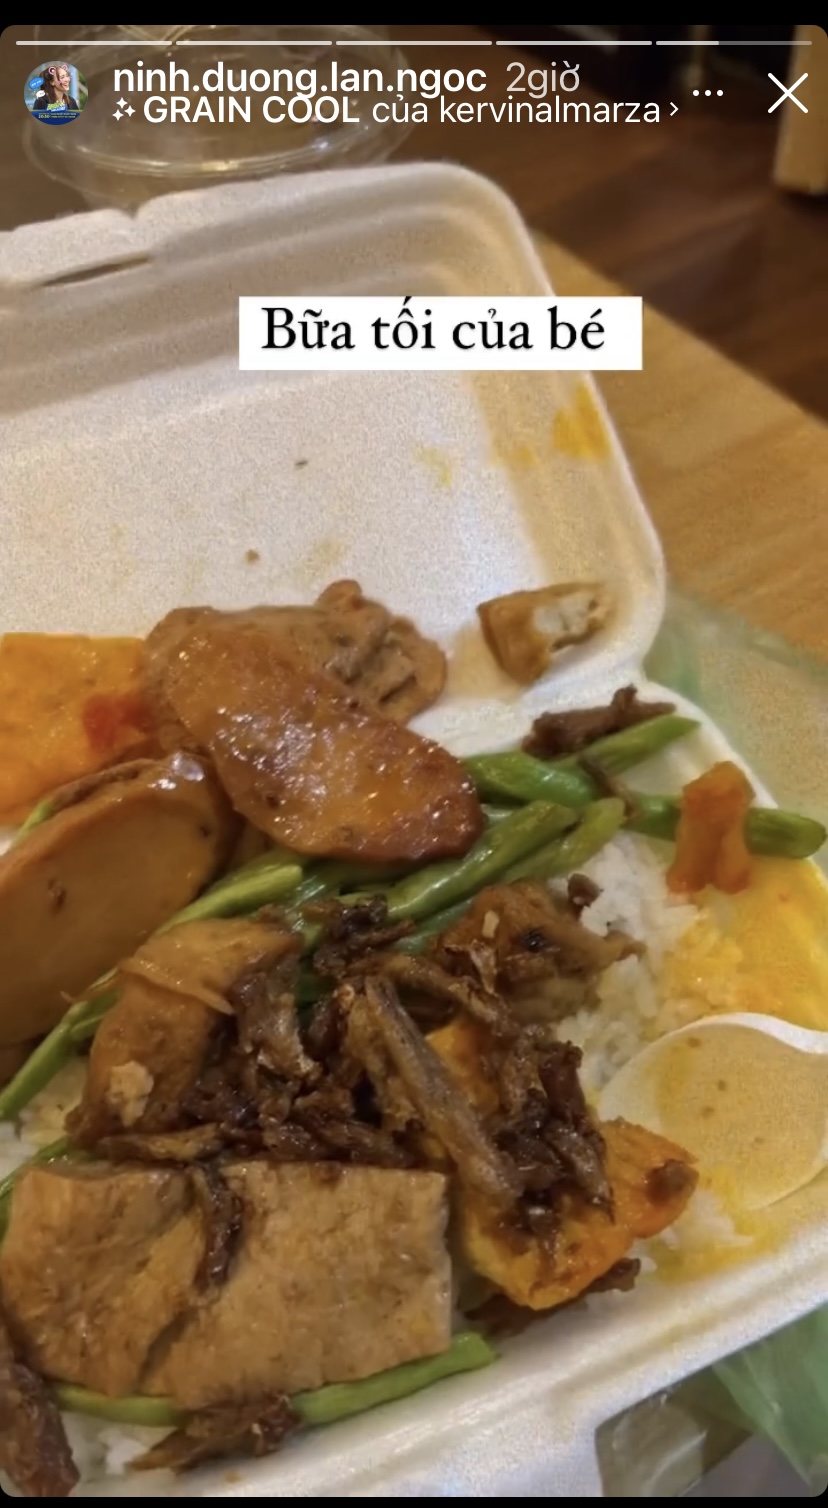 Bữa tối ngày thứ 7 của diễn viên Ninh Dương Lan Ngọc chỉ là một hộp cơm phần đơn giản.